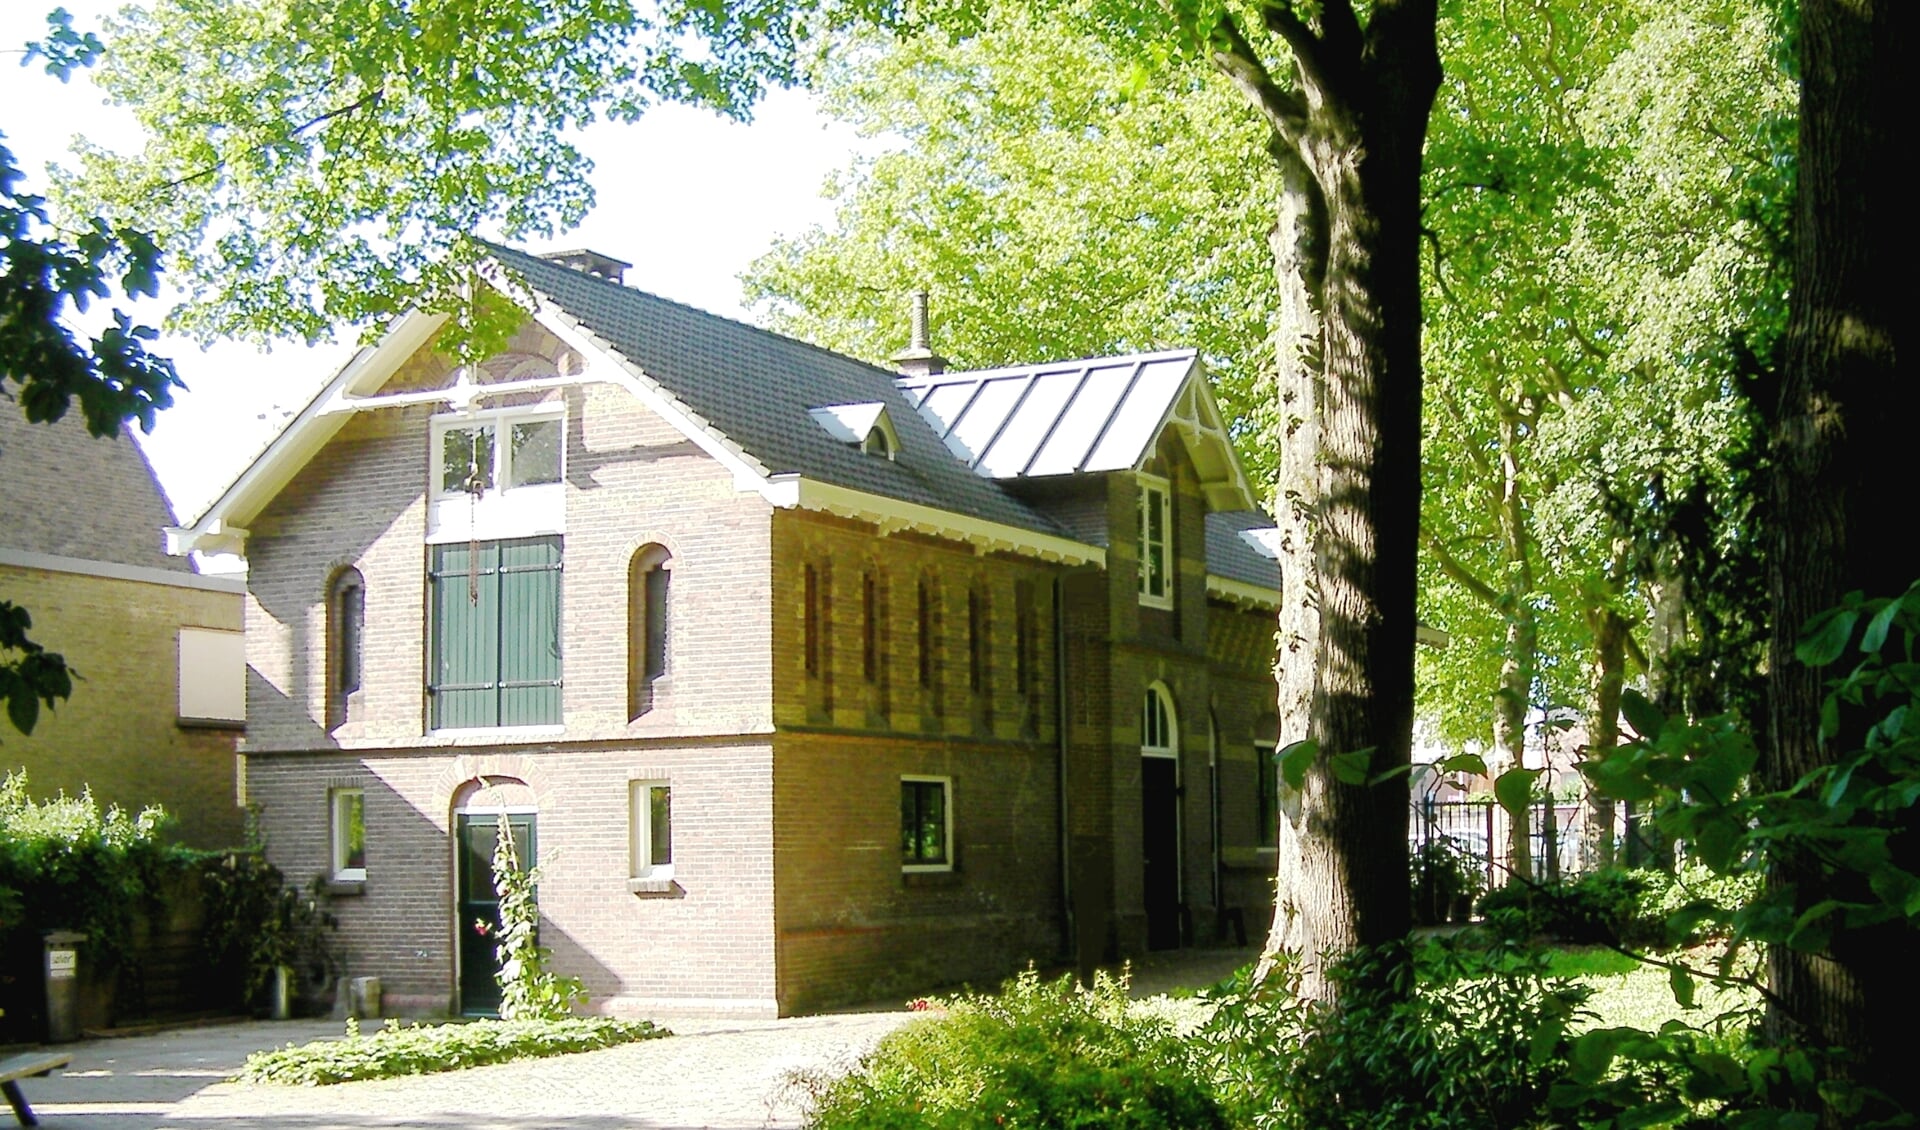 Toegangsgebouw van het Arboretum Oudenbosch, een rijksmonument uit 1889